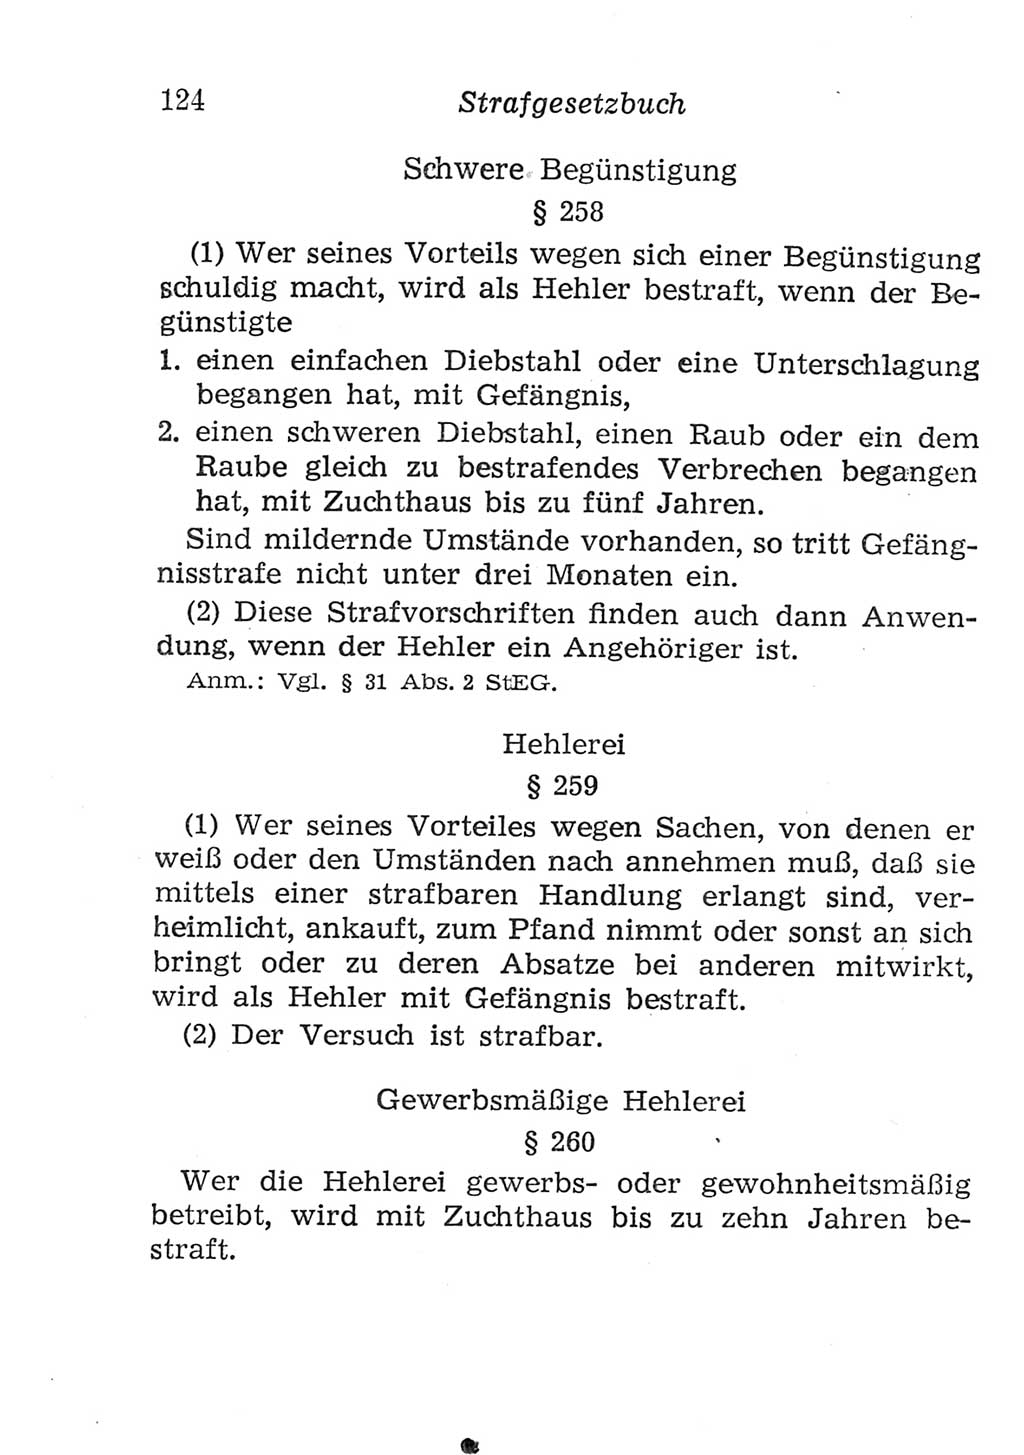 Strafgesetzbuch (StGB) und andere Strafgesetze [Deutsche Demokratische Republik (DDR)] 1957, Seite 124 (StGB Strafges. DDR 1957, S. 124)